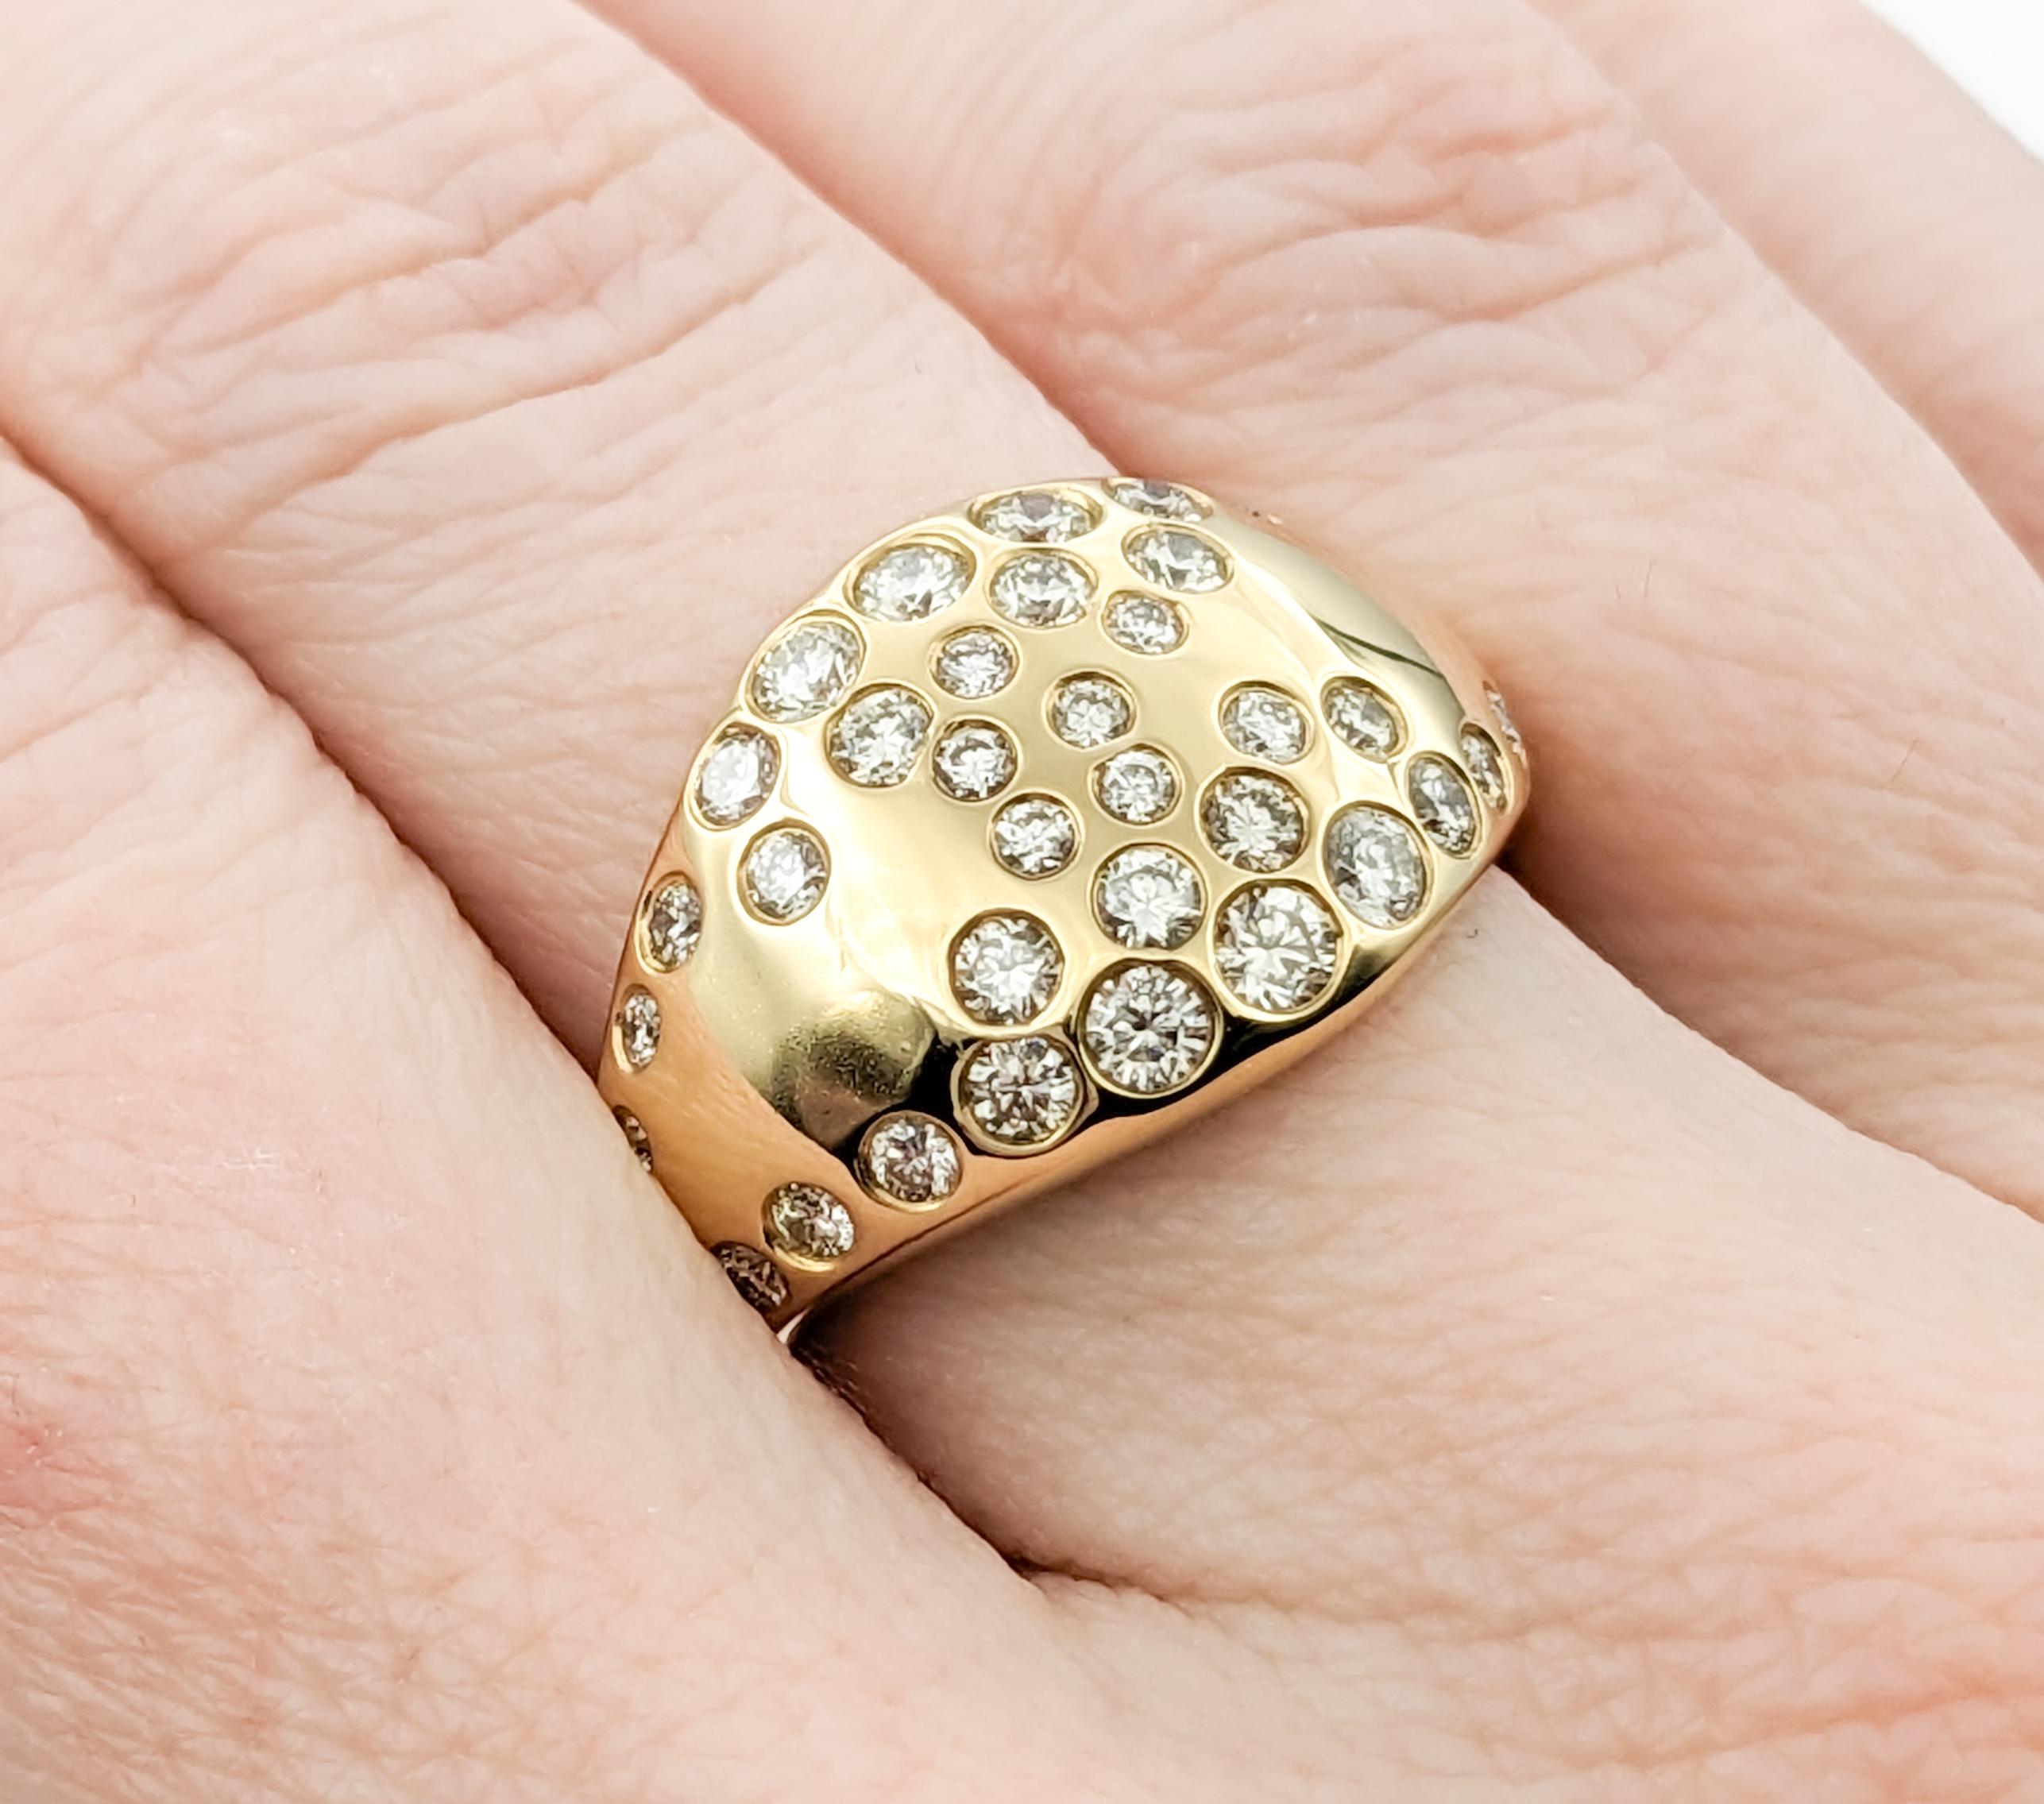 Women's Unique Flush-Set Diamond Cocktail Ring For Sale